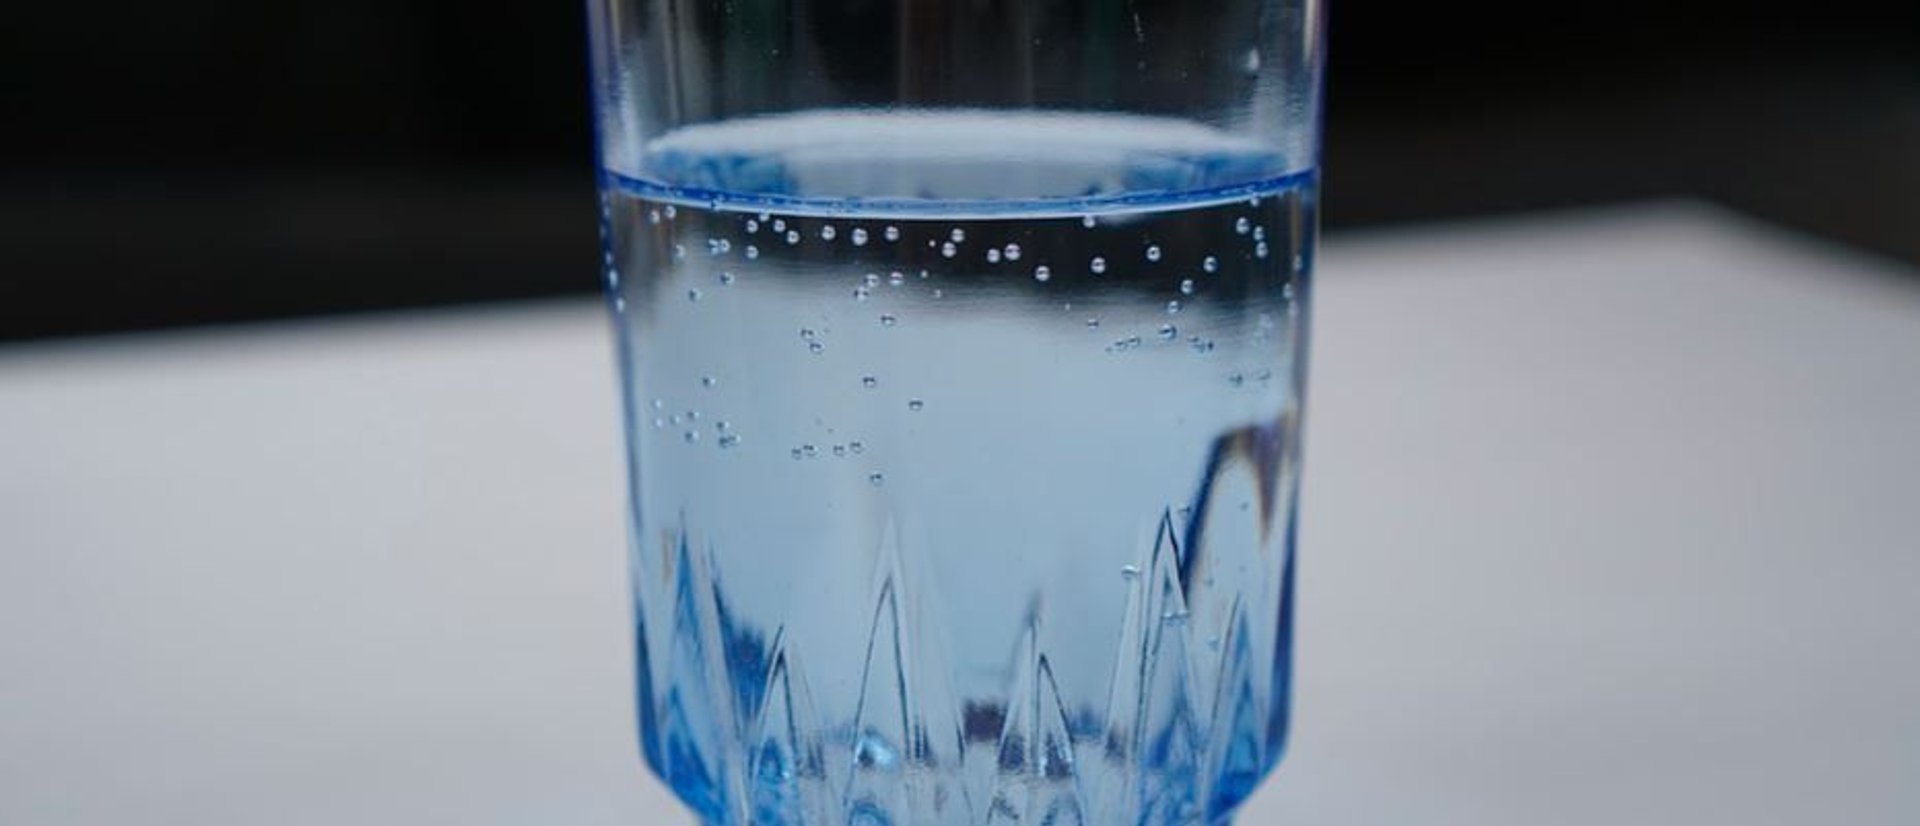 Zastosowania domowe wody gazowanej